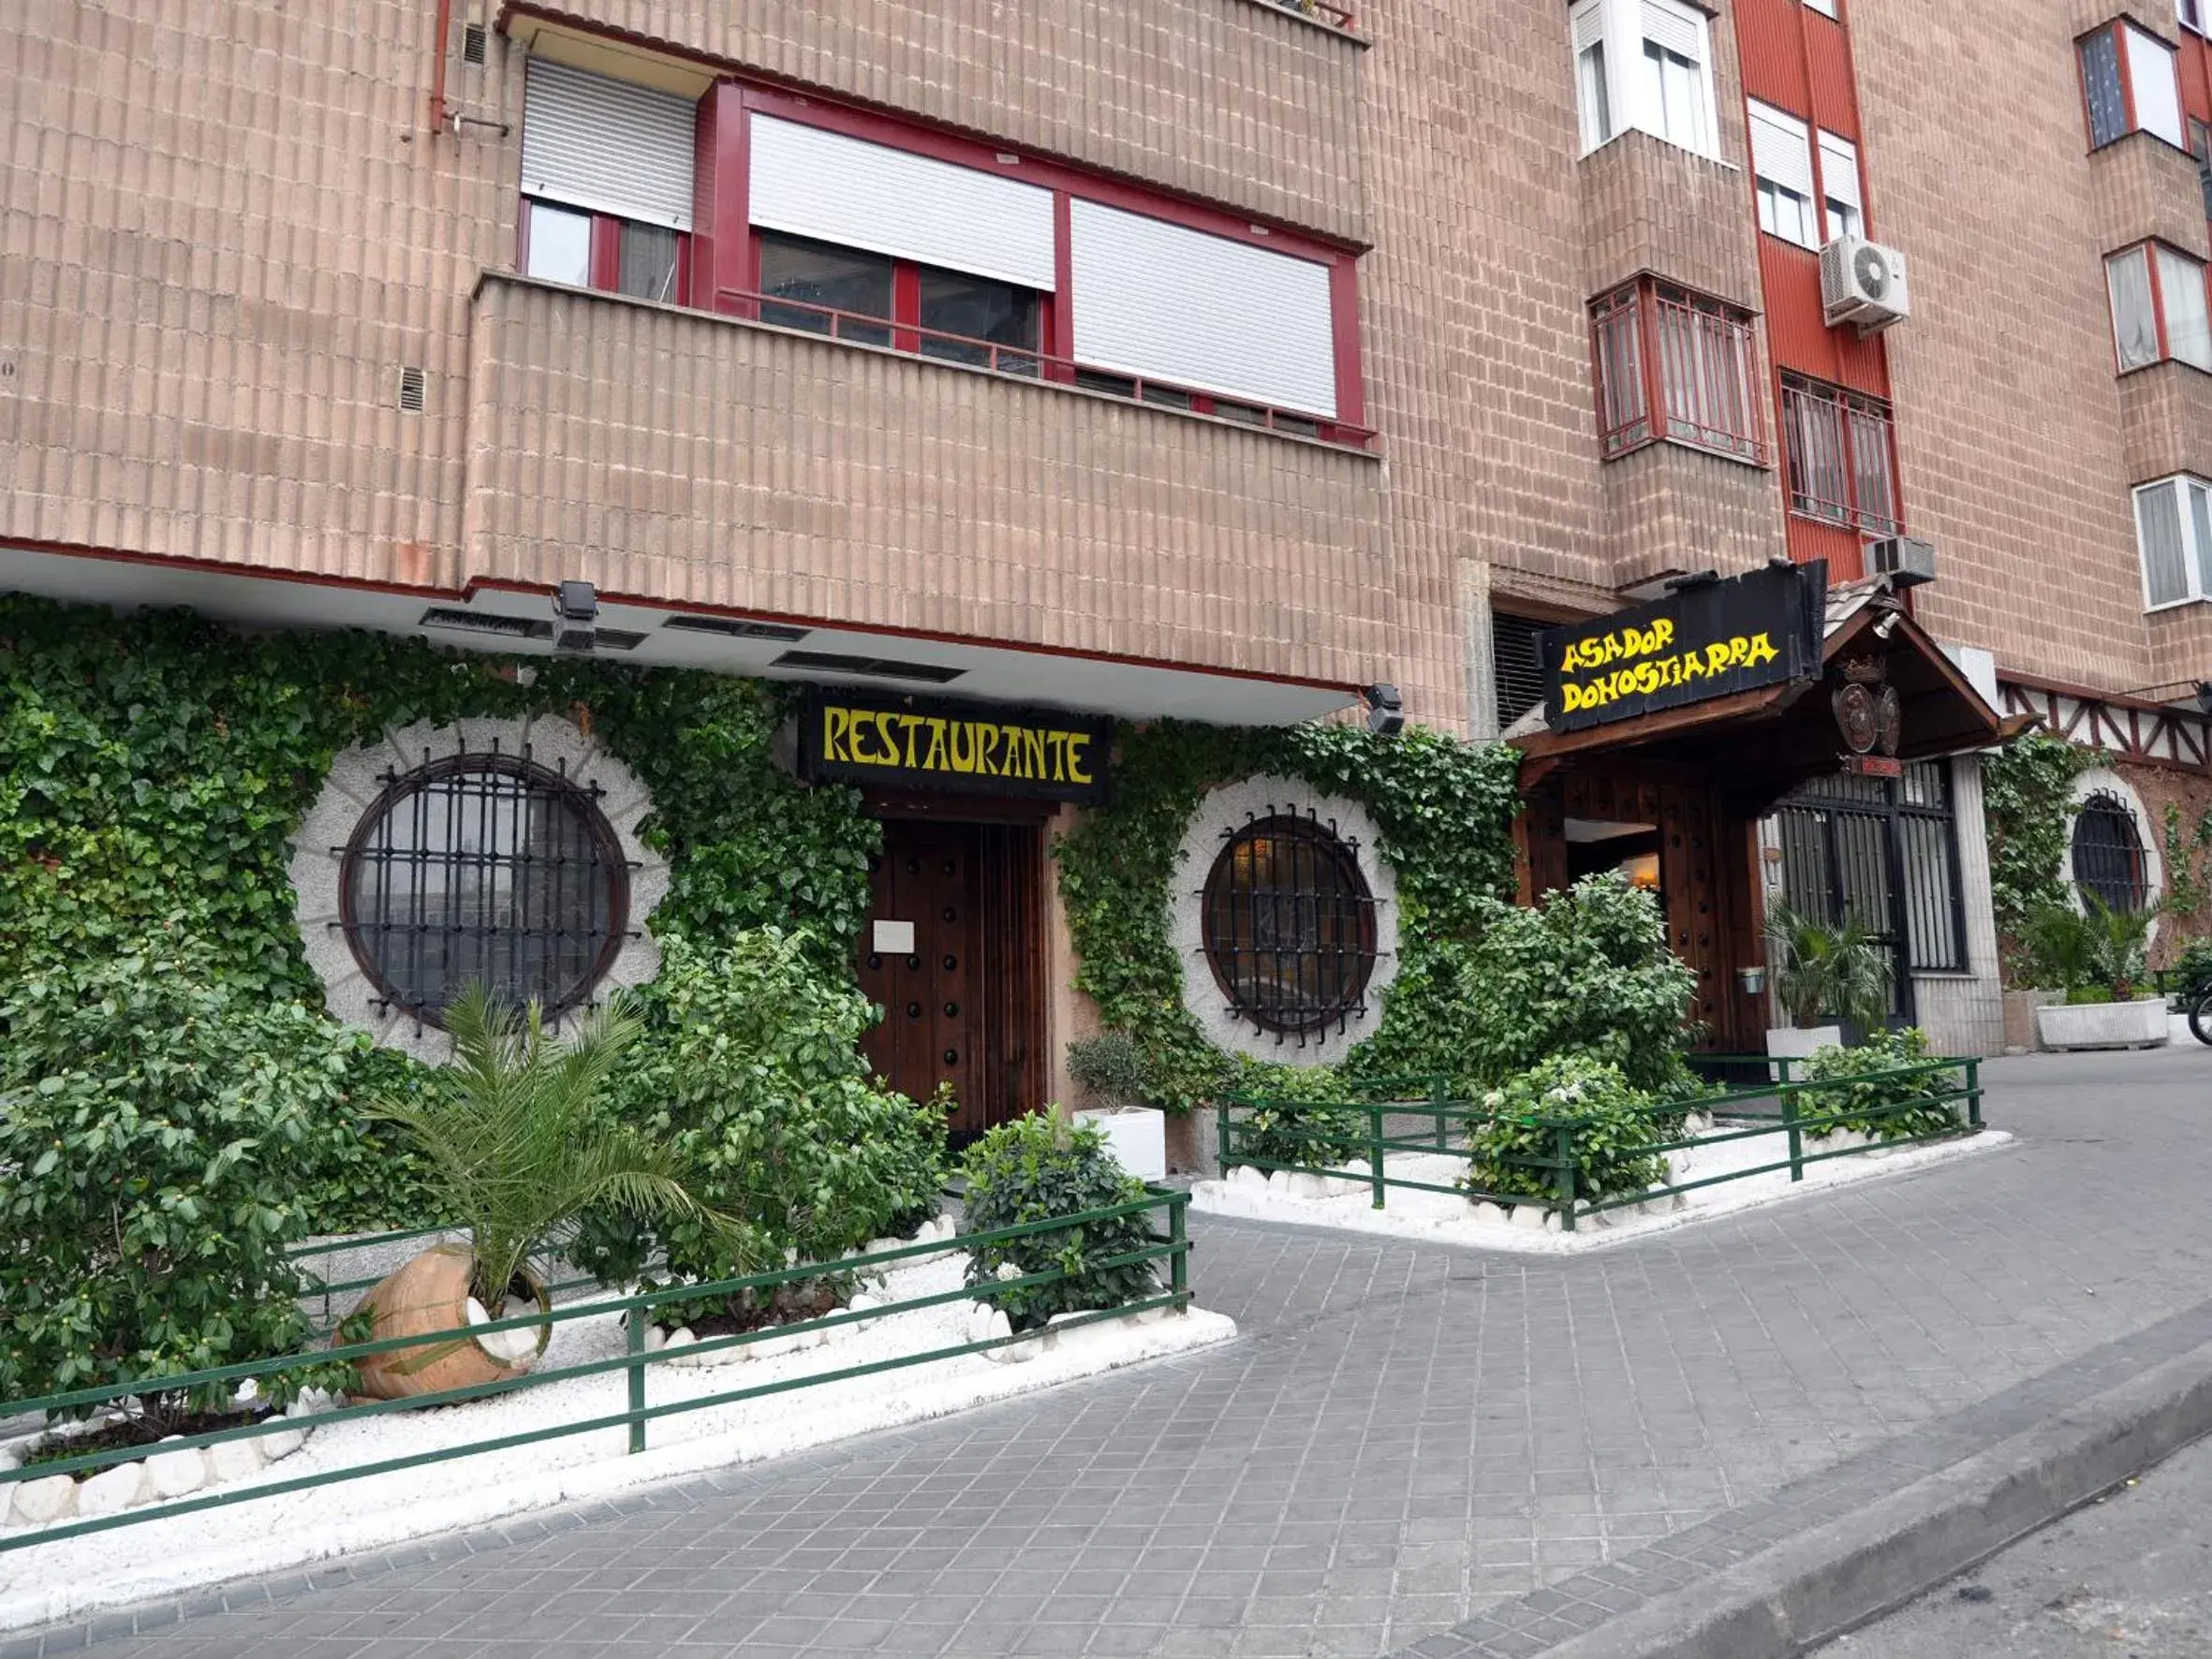 Restaurant/places to eat, Facade/Entrance in Erase un Hotel